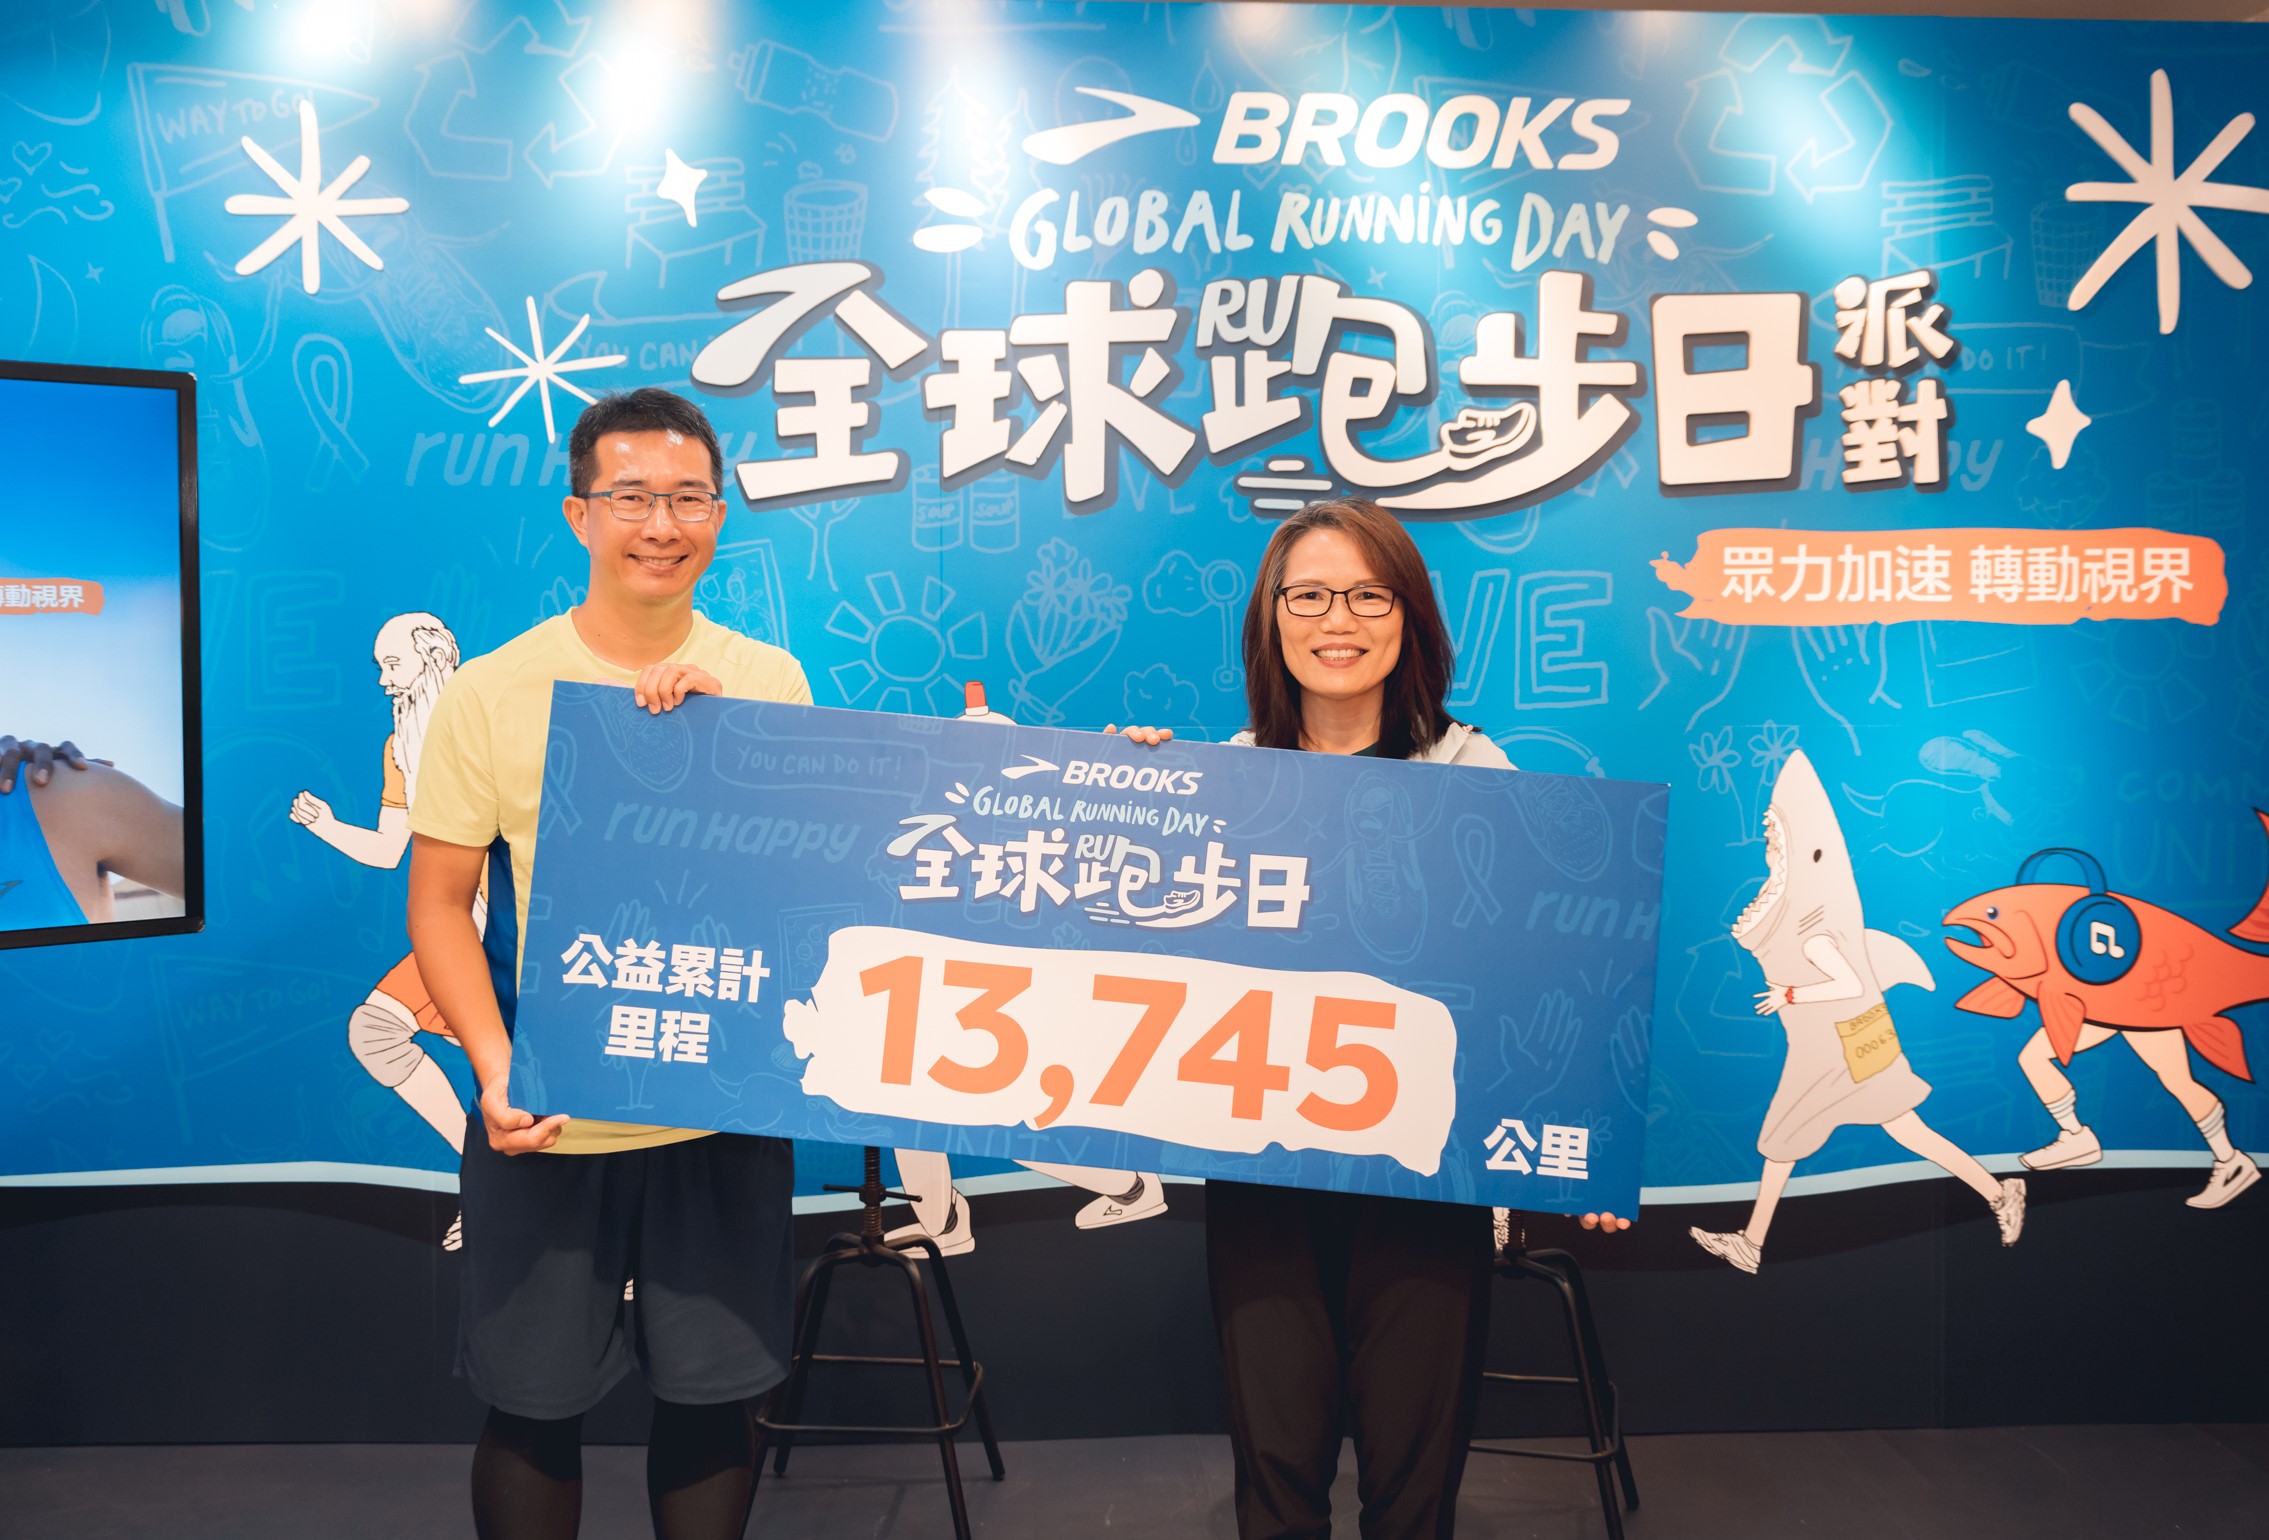 BROOKS 公益里程挑戰共募集13,745公里